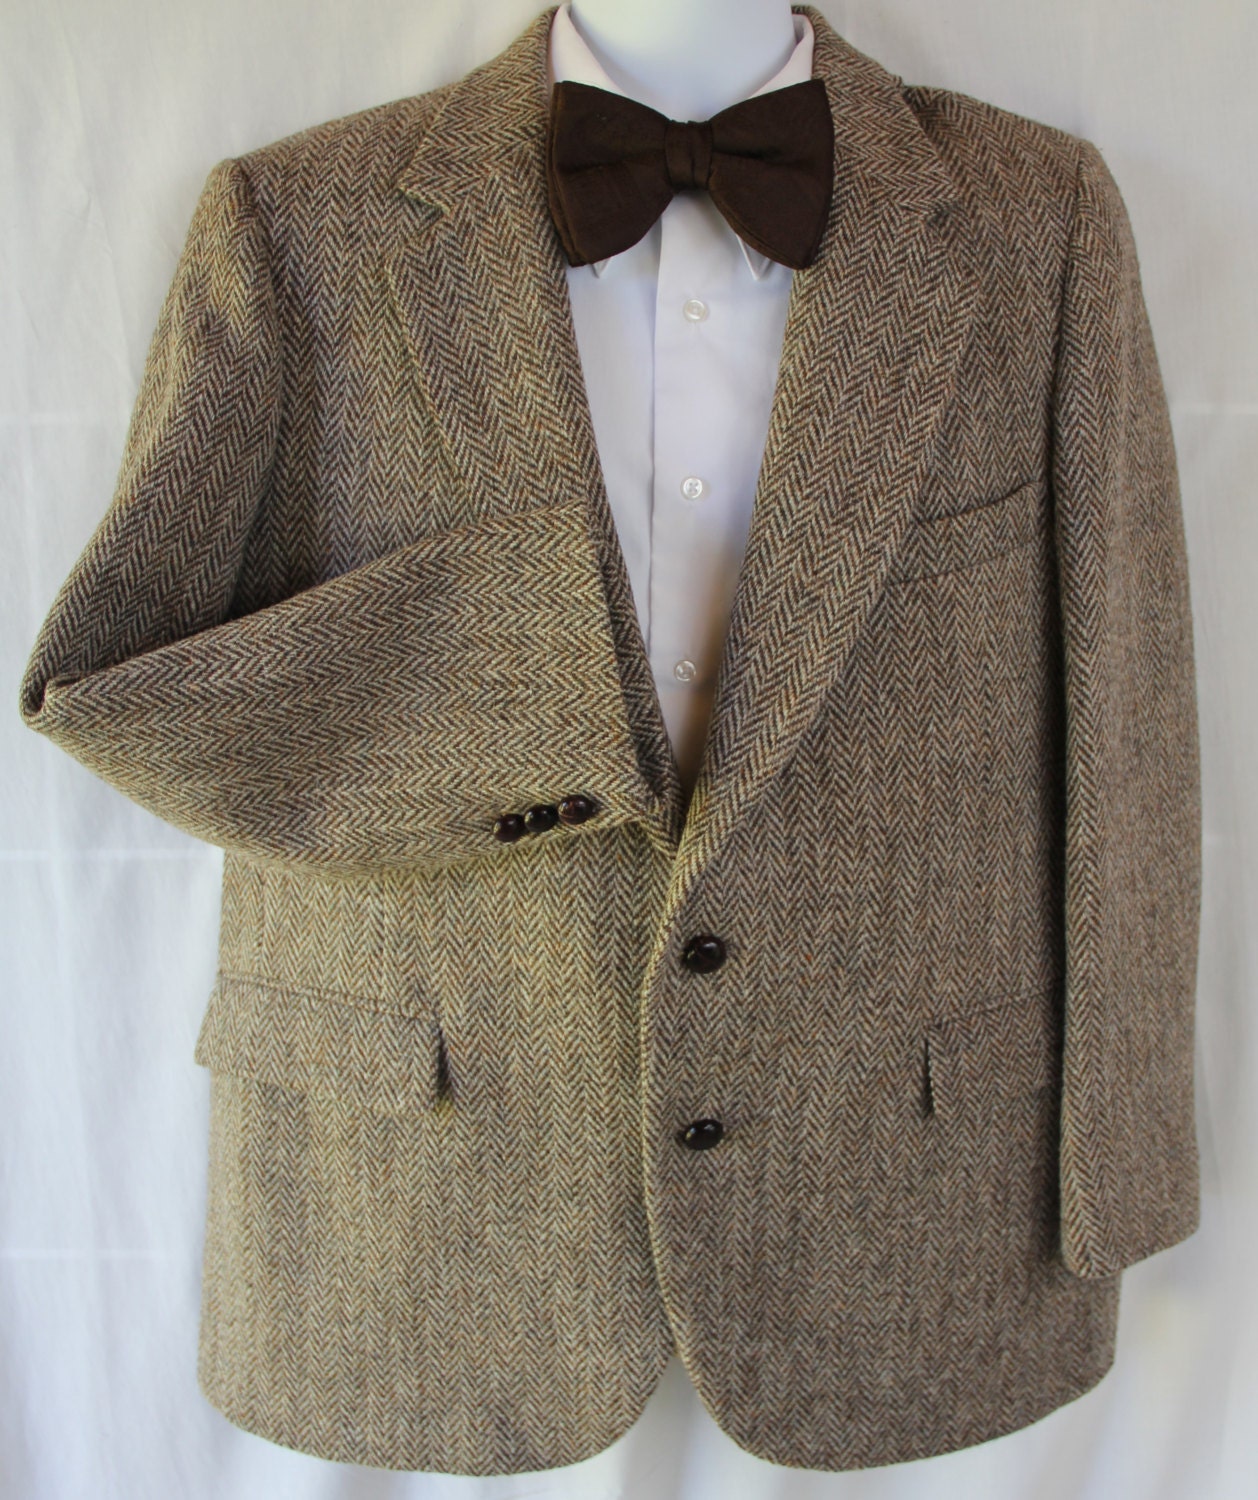 Vintage Harris Tweed Jacket / Dr Who / Sport Coat / Tweed